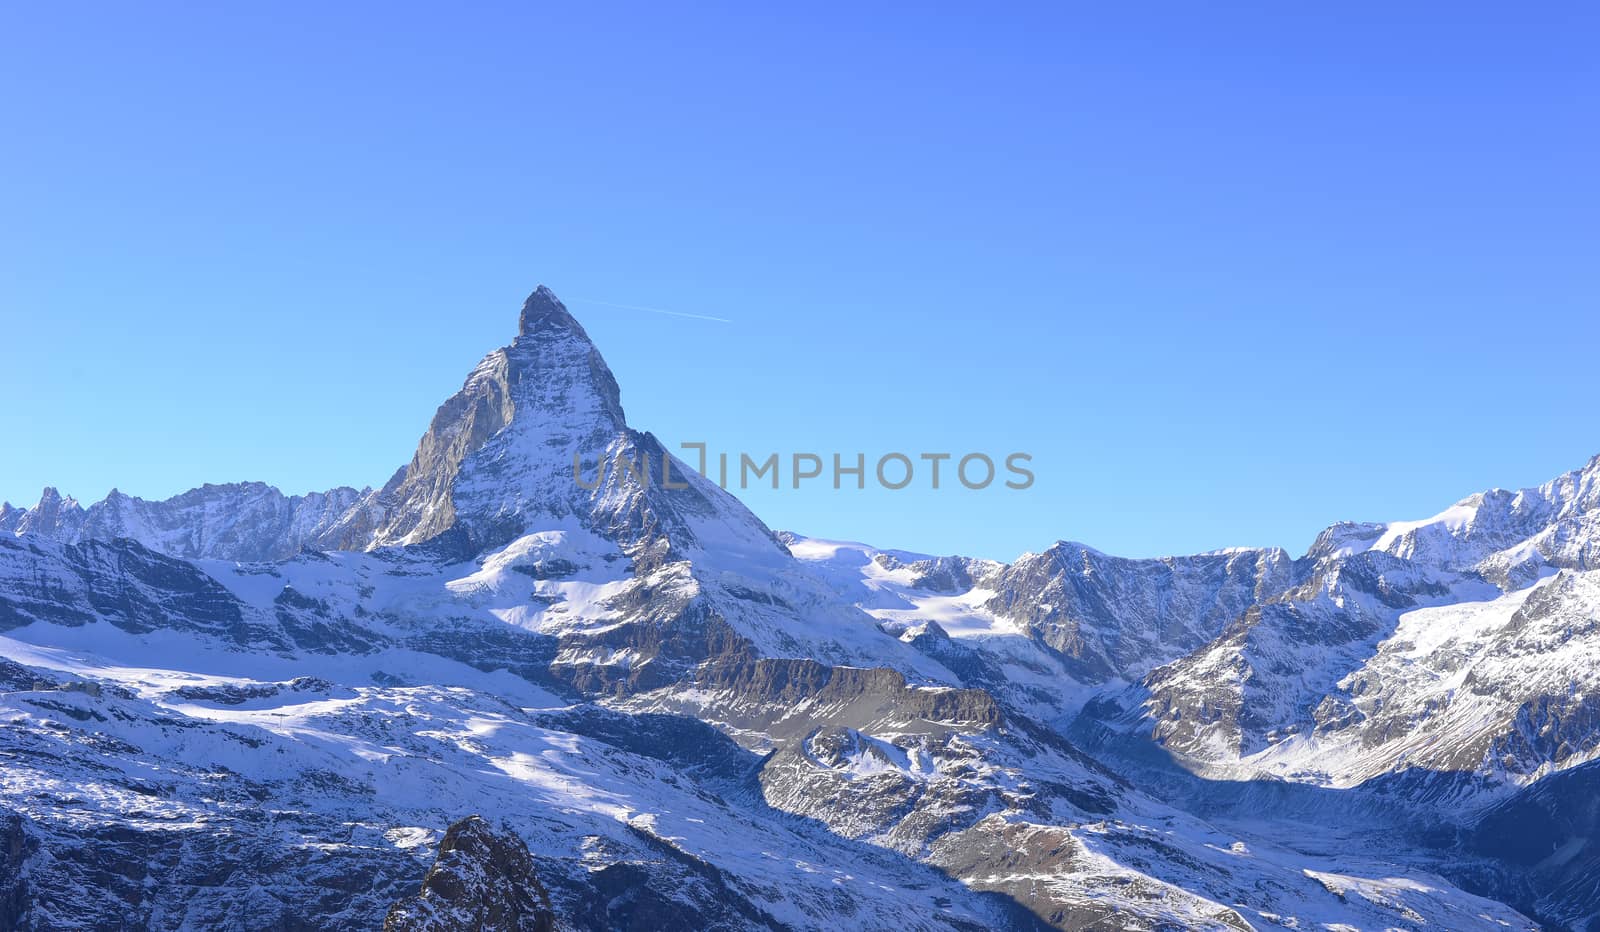 The most beautiful Swiss Alps, Matterhorn in Zermatt by gypsygraphy